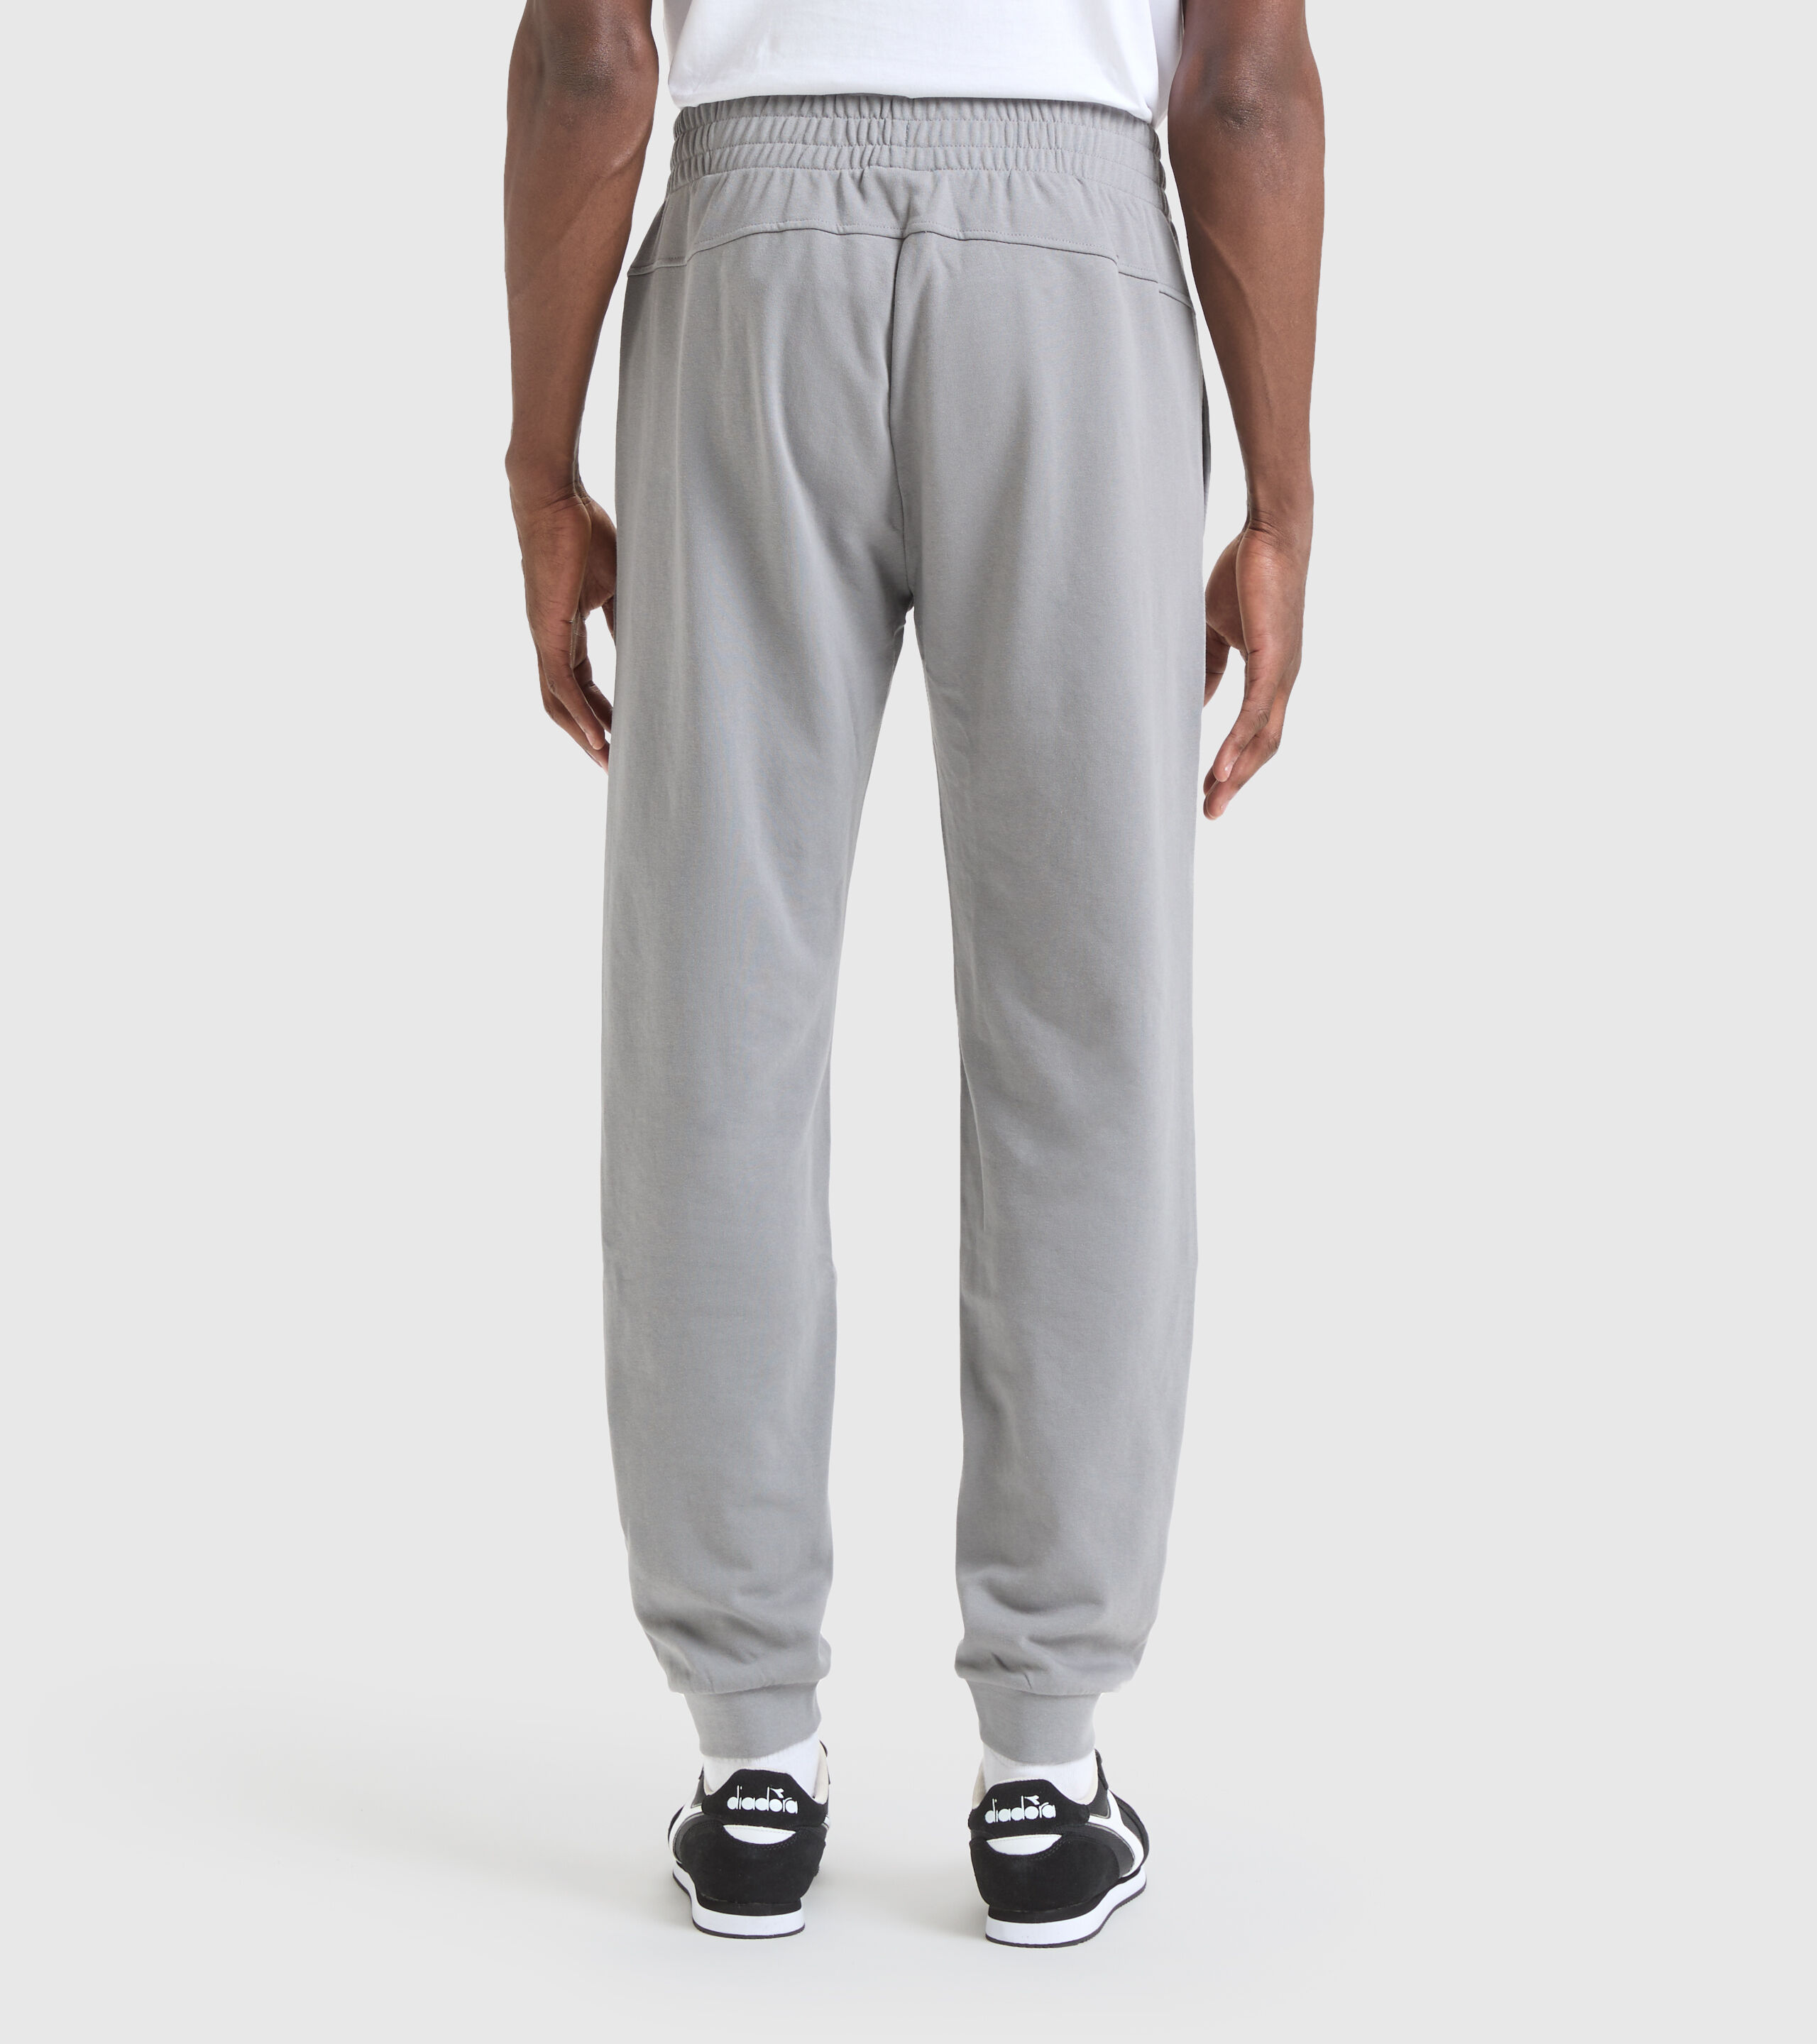 Hanes Pantalones deportivos EcoSmart sin bolsillo para hombre paquete de 2 